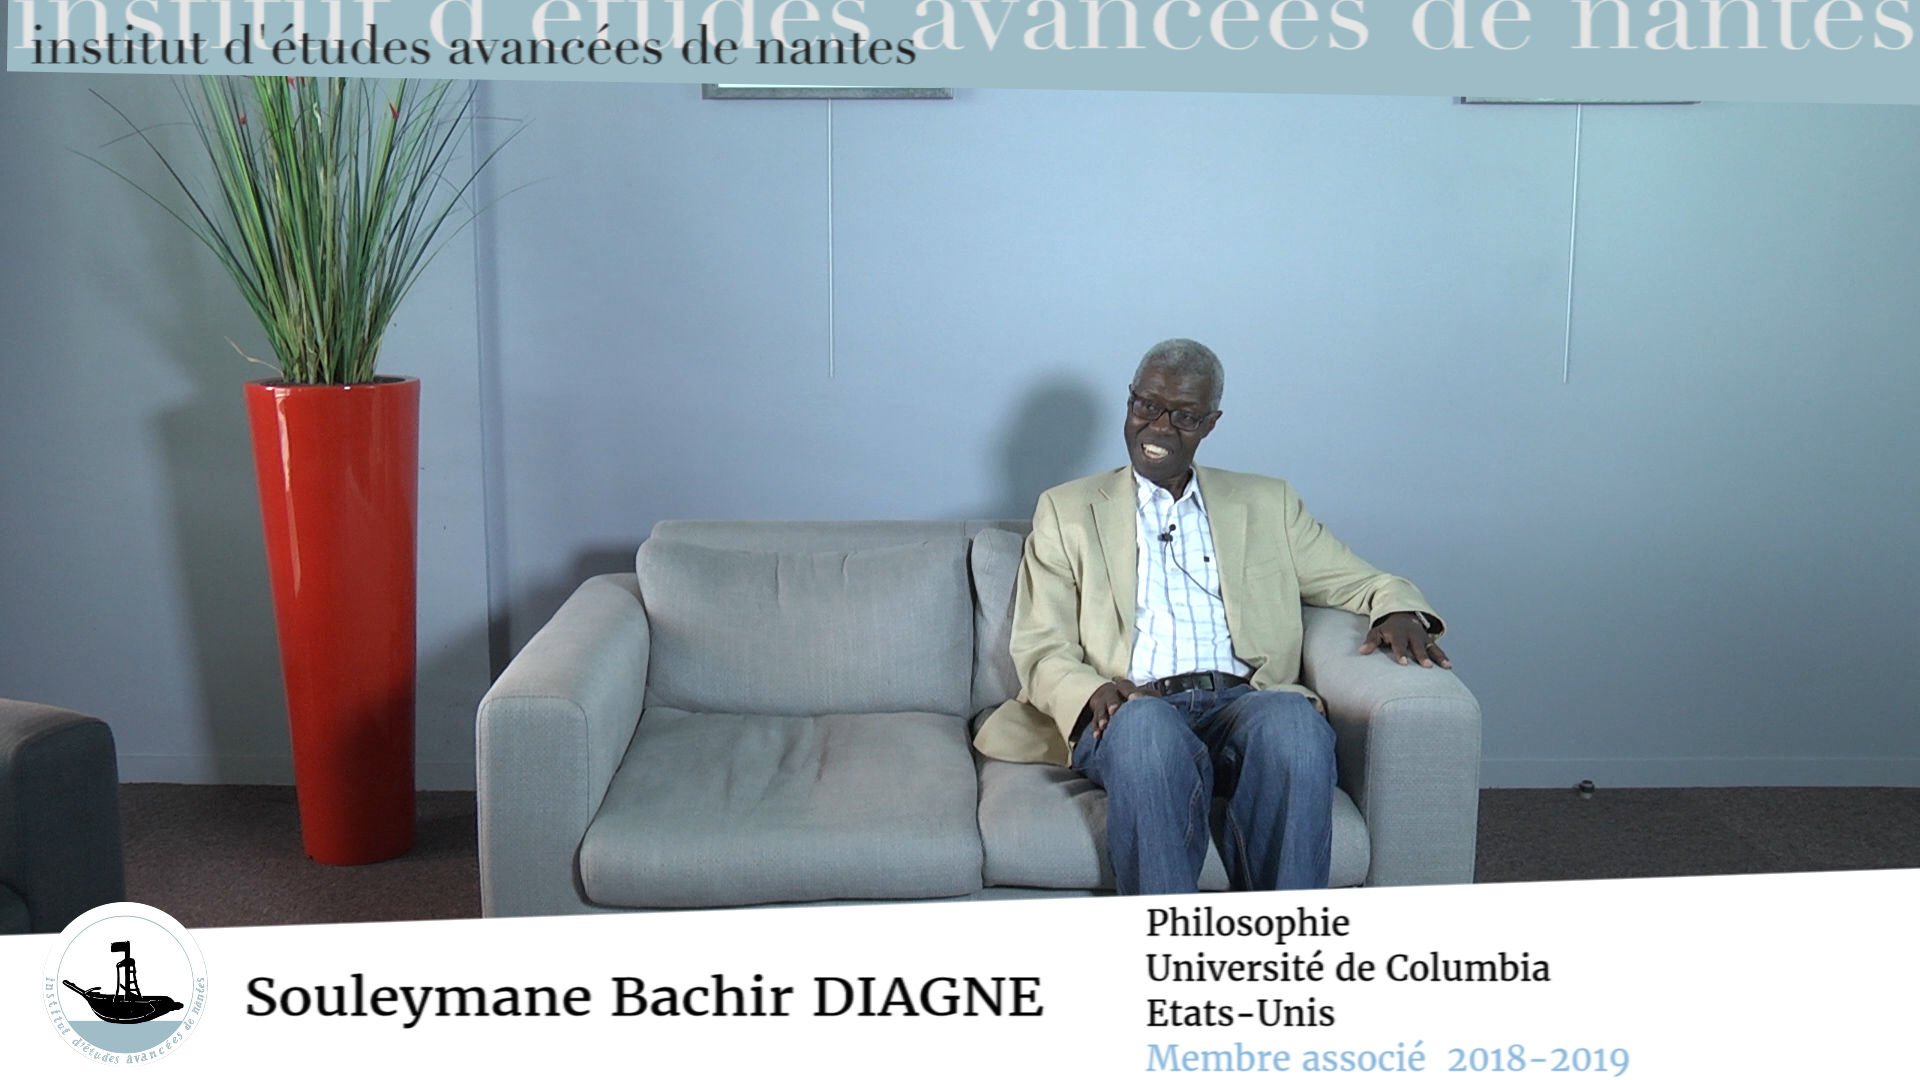 #145 - Souleymane Bachir Diagne, membre associé - " La découverte de l'IEA de Nantes est une des choses les plus importantes qui me soit arrivée ces dernières années ! "